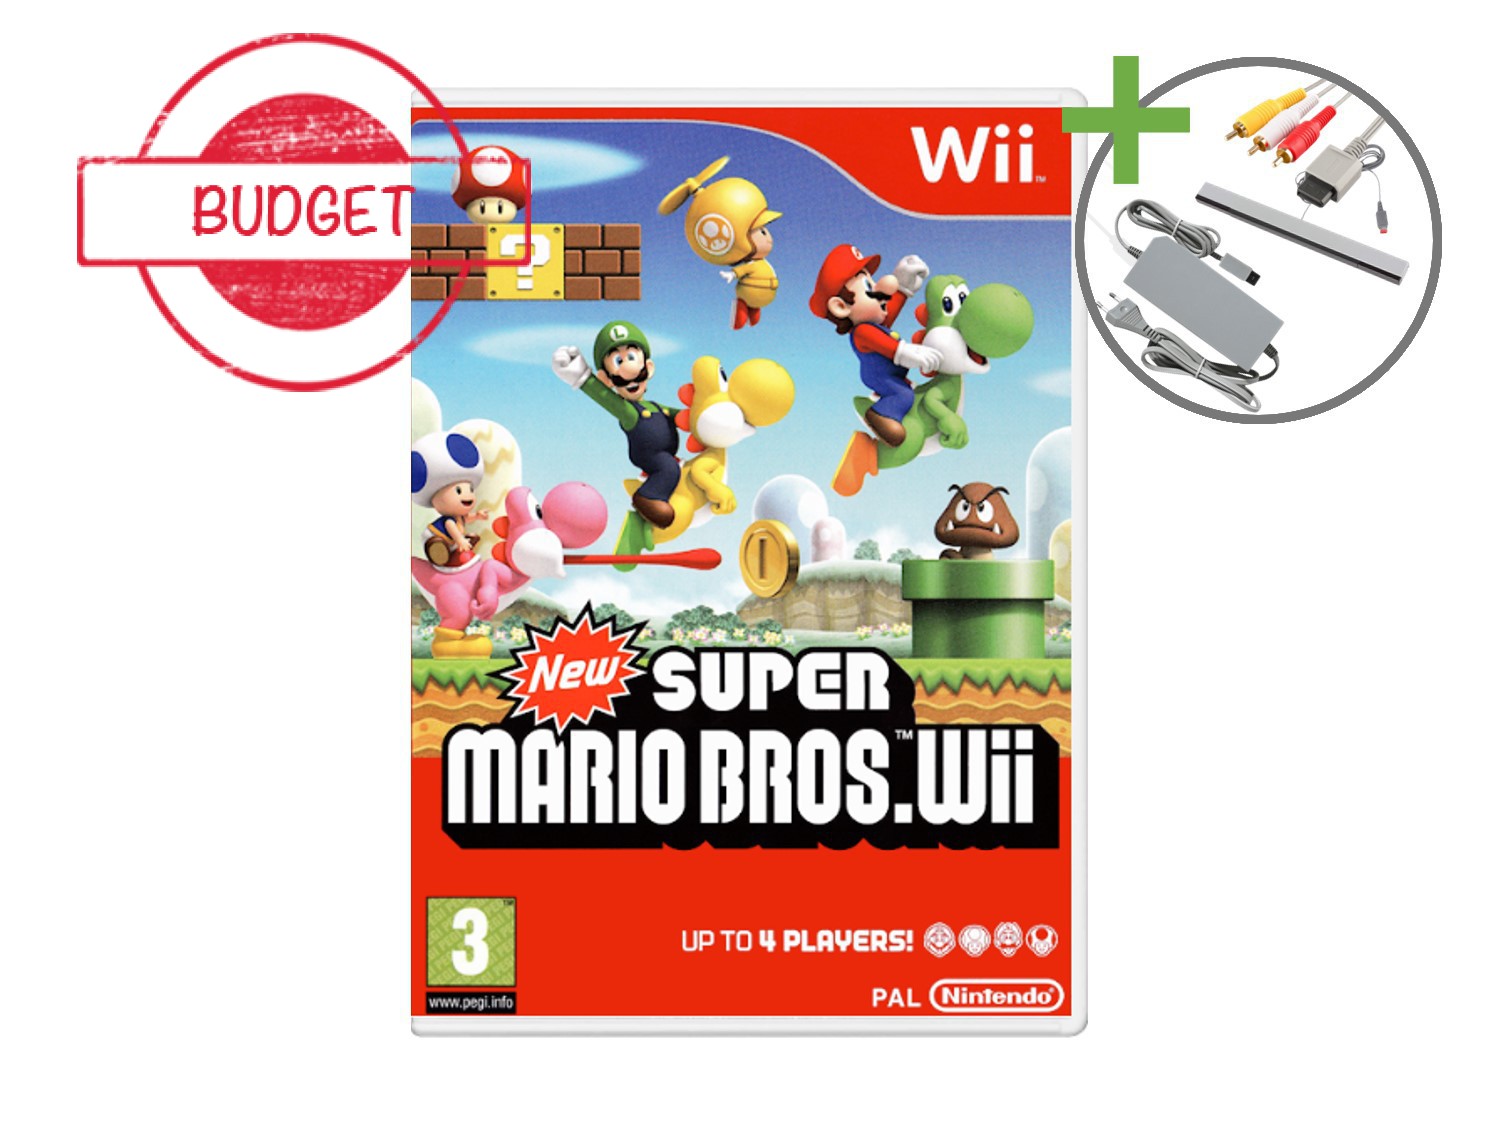 Nintendo Wii Starter Pack - New Super Mario Bros. Wii Edition - Budget - Wii Hardware - 4